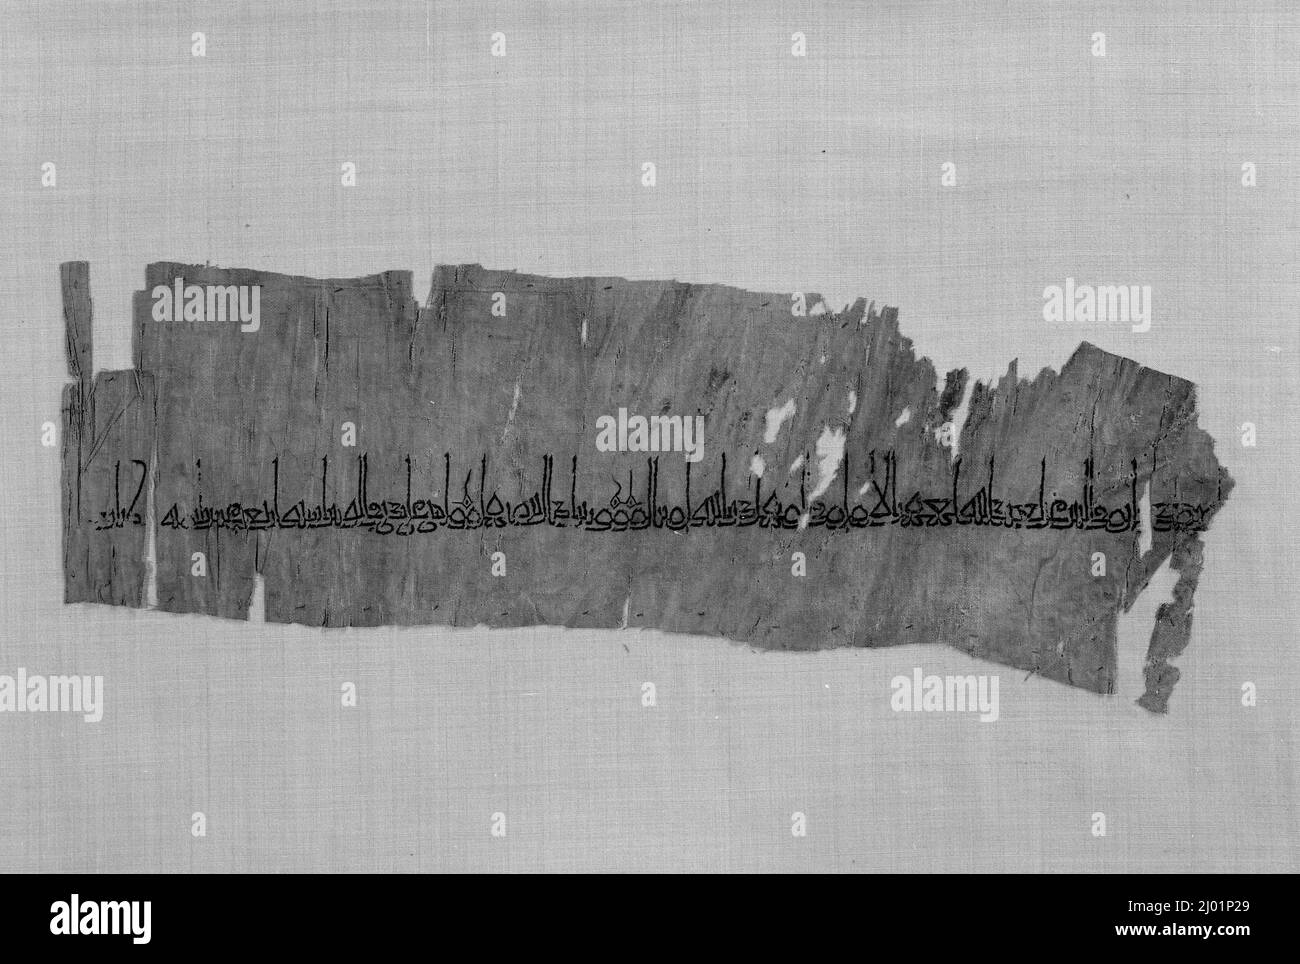 Fragment Für Beschriftete Textilien (Tiraz). Irak, islamisch, 926-927/314 A.H.. Textilien; Tiraz. Seidenstickerei mit Kettenstich auf unifarbener Baumwolle Stockfoto